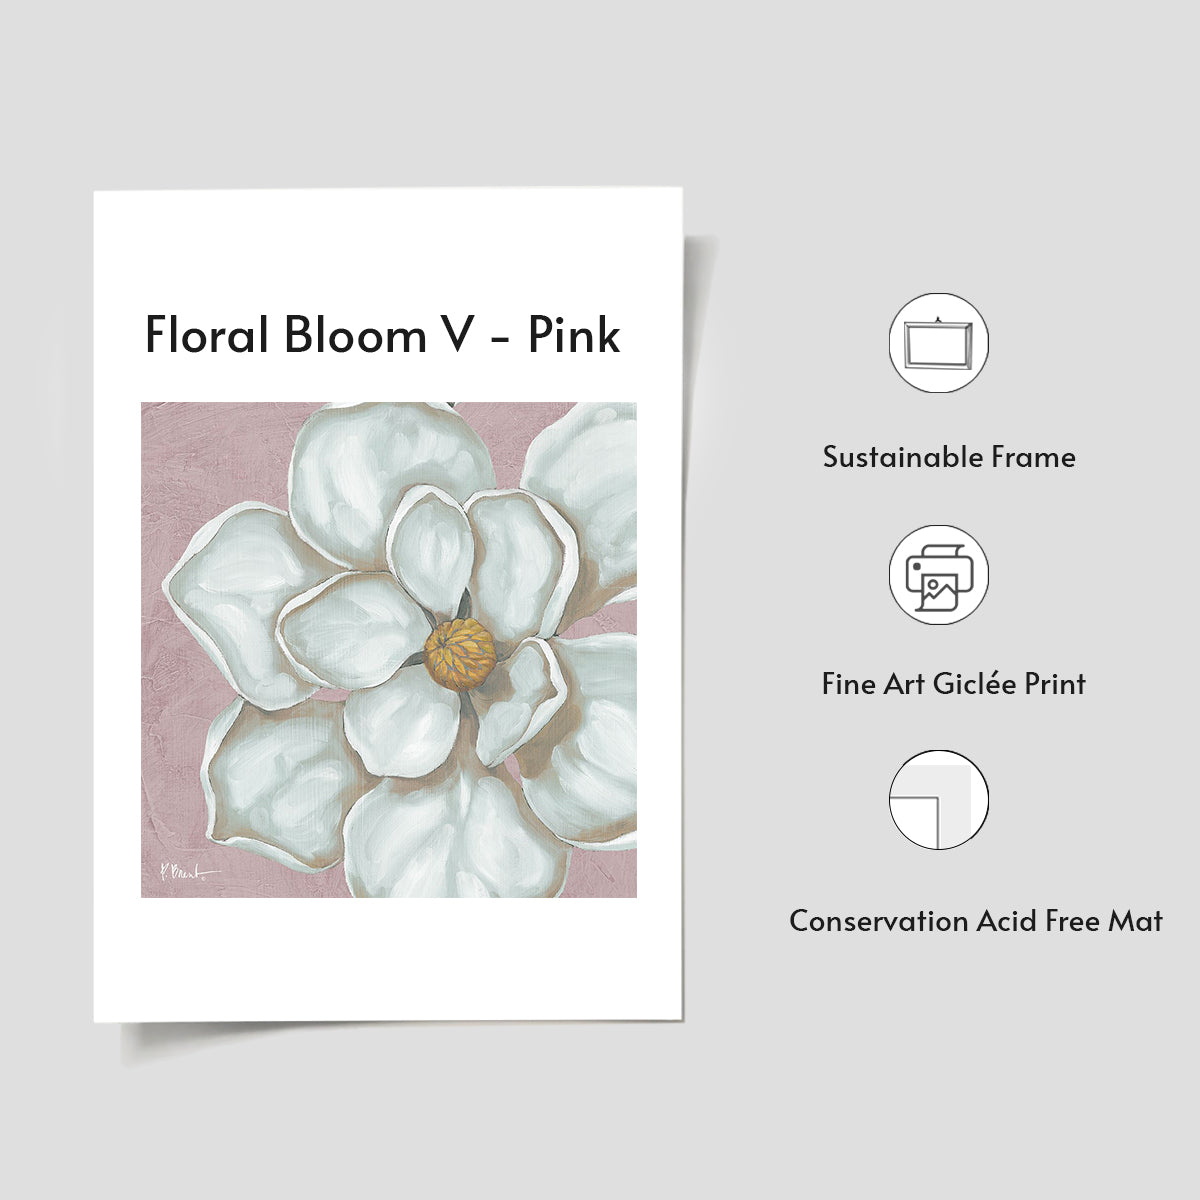 Floraison florale V - Rose 